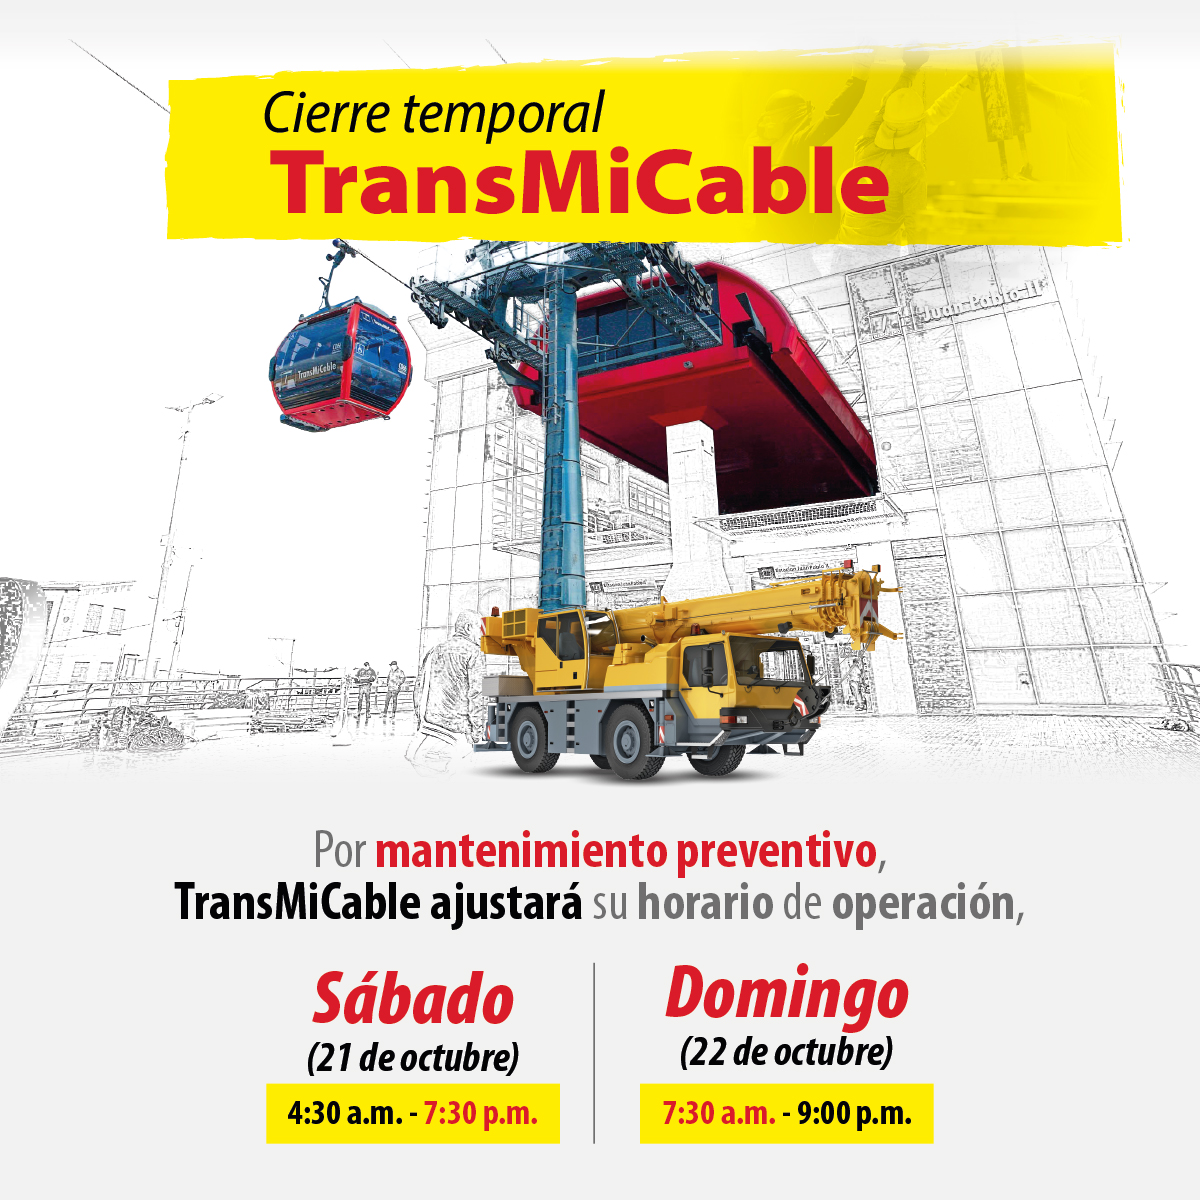 Este es el horario que tendrá TransMiCable por mantenimiento TransMiCable cambiará su horario de operación durante este sábado y domingo, por mantenimiento preventivo.